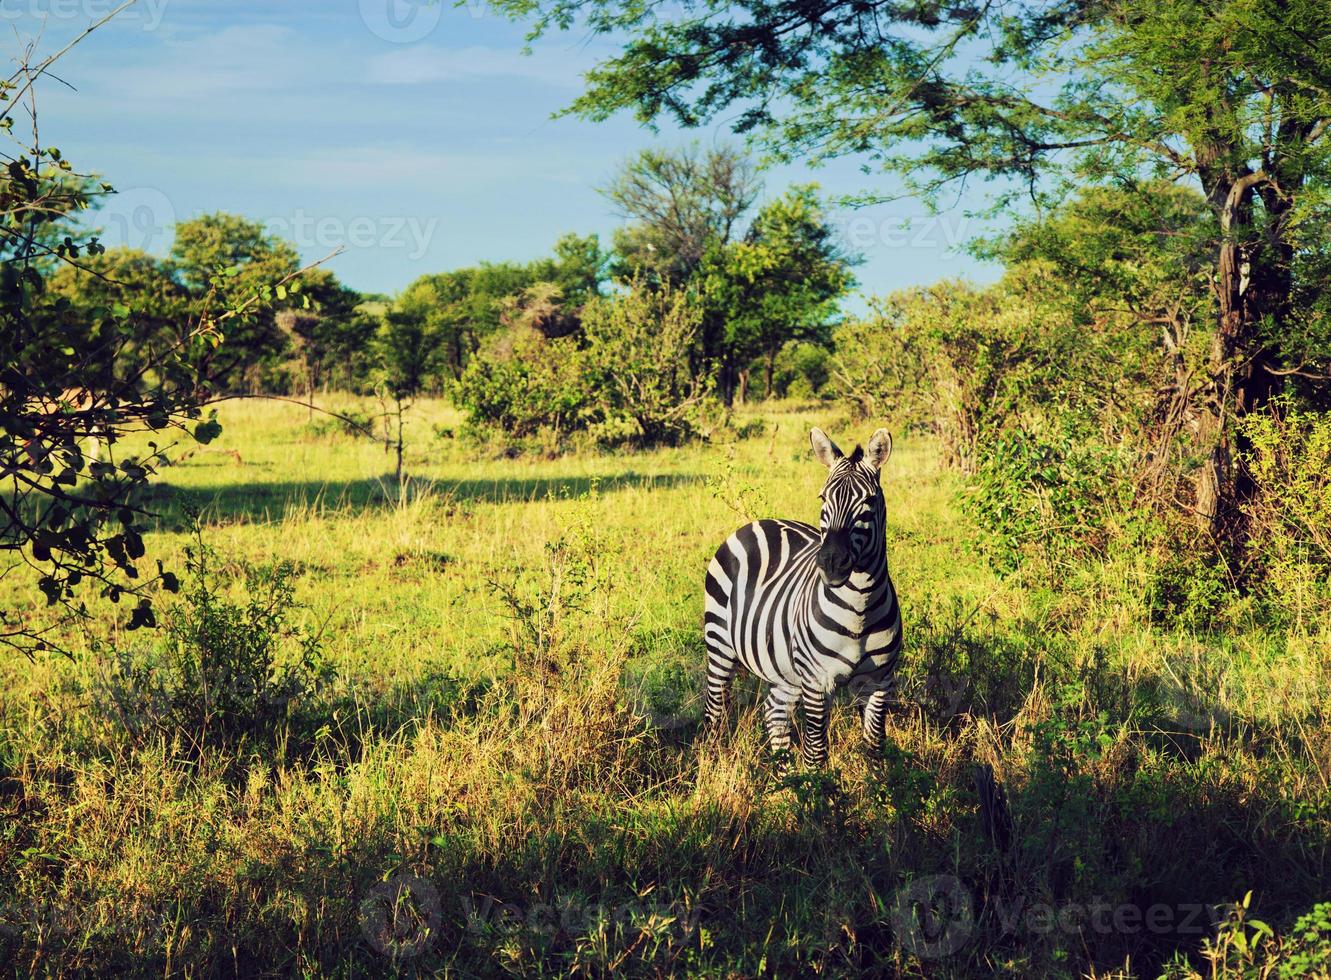 Zebra in grass on African savanna. photo